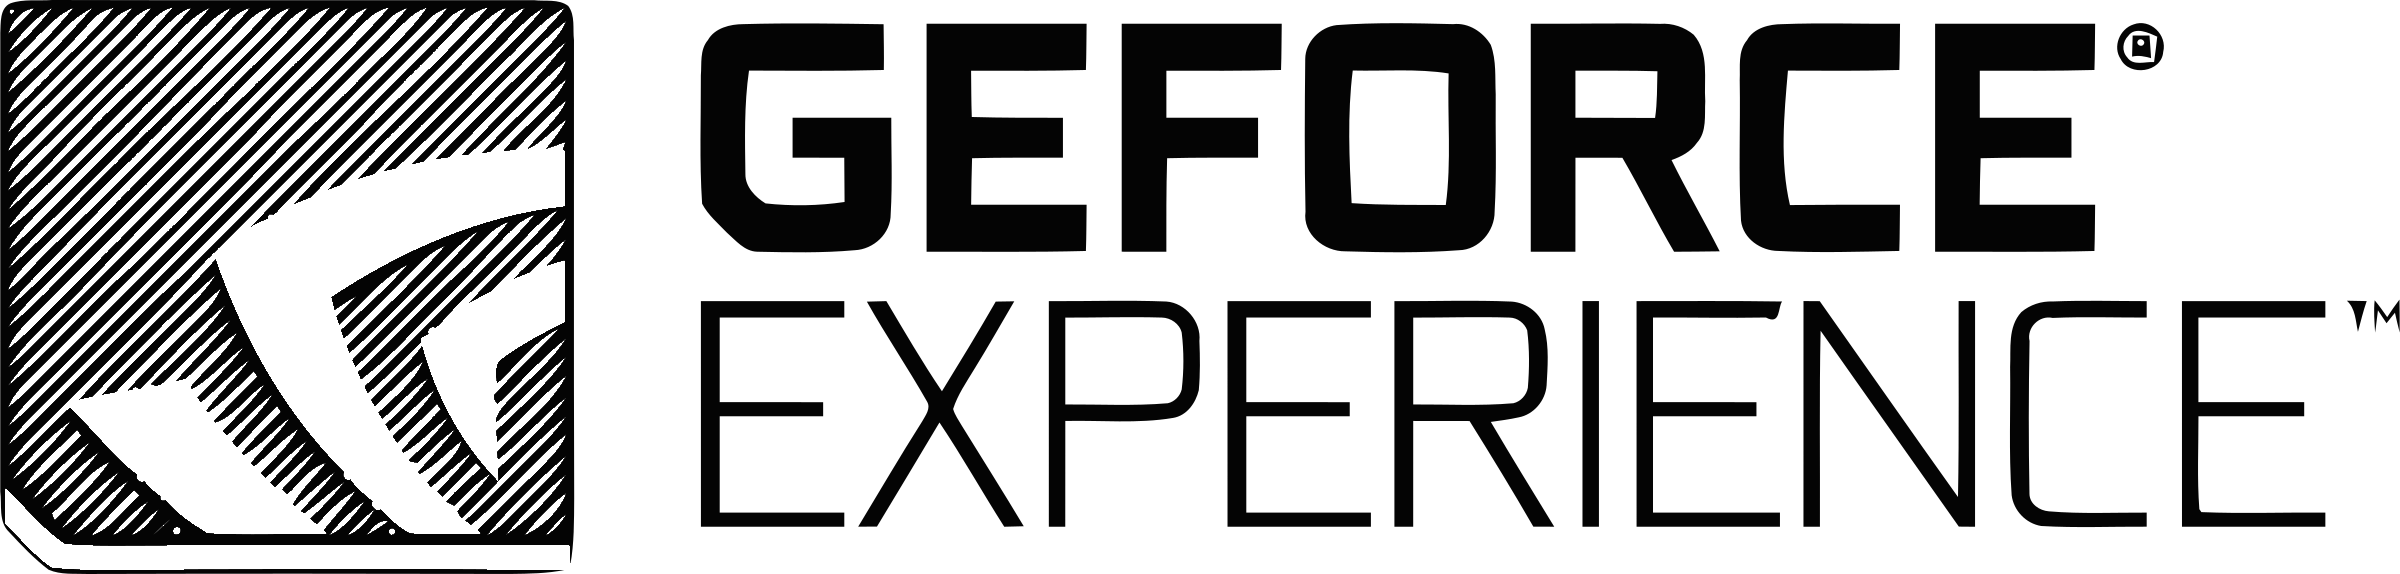 Nvidia Geforce Logo Transparent Background PNG